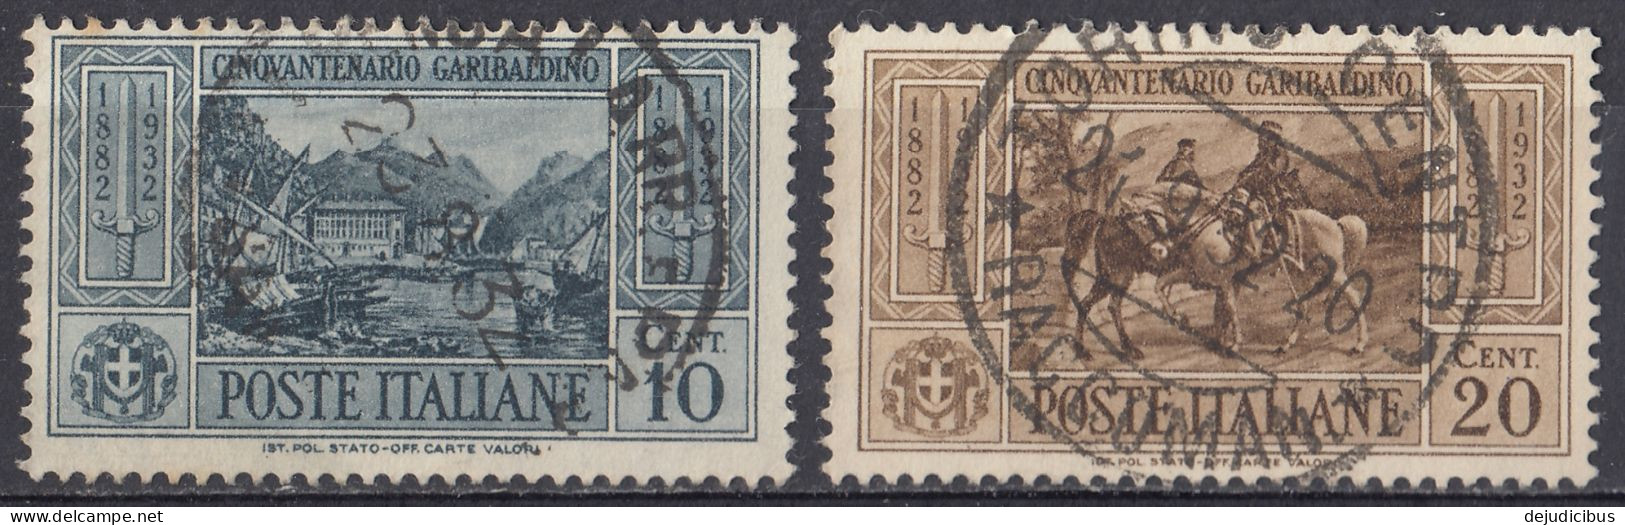 ITALIA - 1932 - Lotto Di 2 Valori Usati:  Yvert 295 E 296. - Colis-postaux